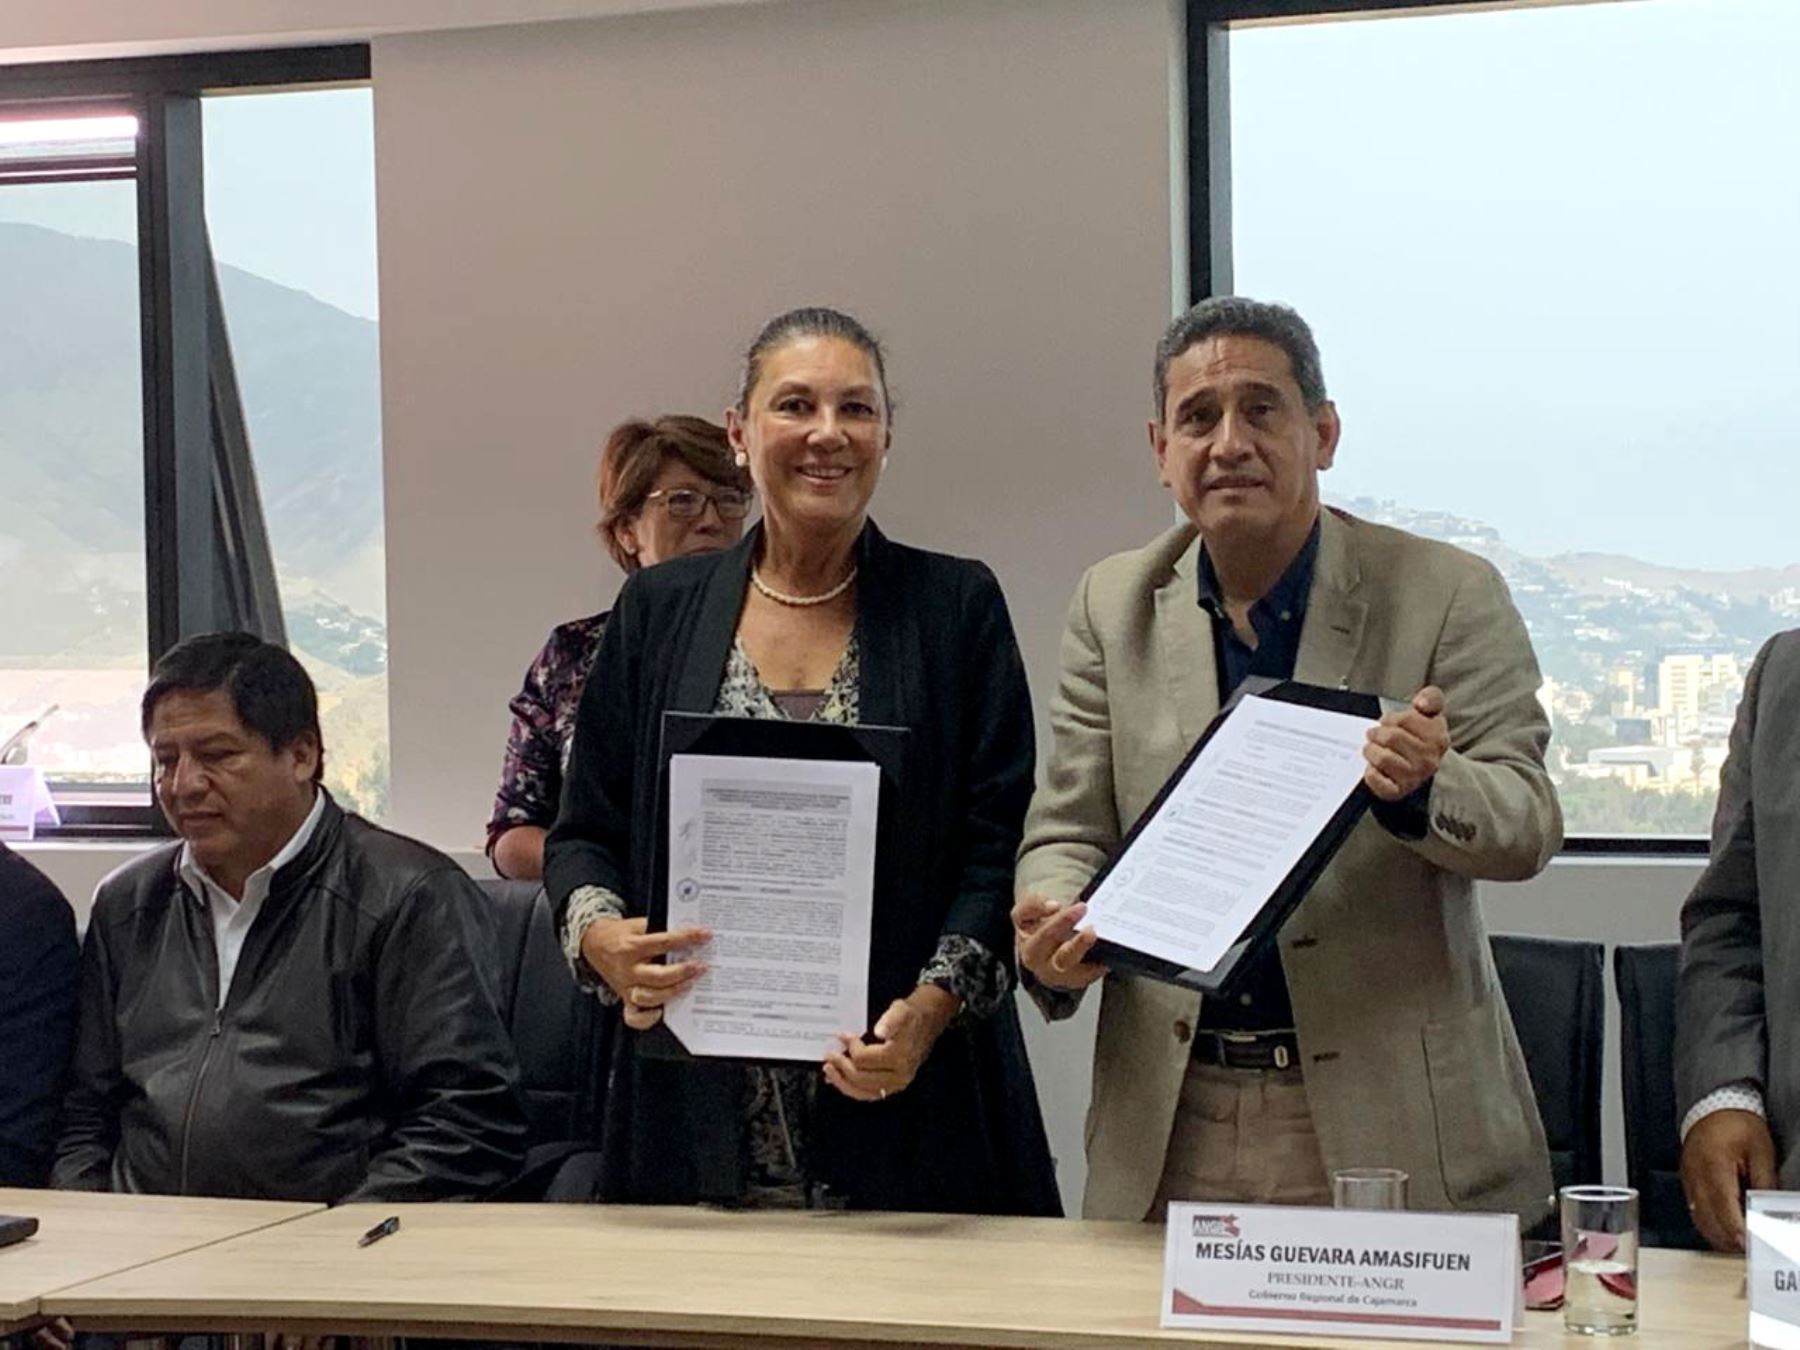 El presidente de la ANGR, Mesías Guevara, y la presidenta del Concytec, Fabiola León–Velarde, suscribieron un Convenio Marco de Cooperación Interinstitucional en el marco de la reunión general de gobernadores regionales del Perú.